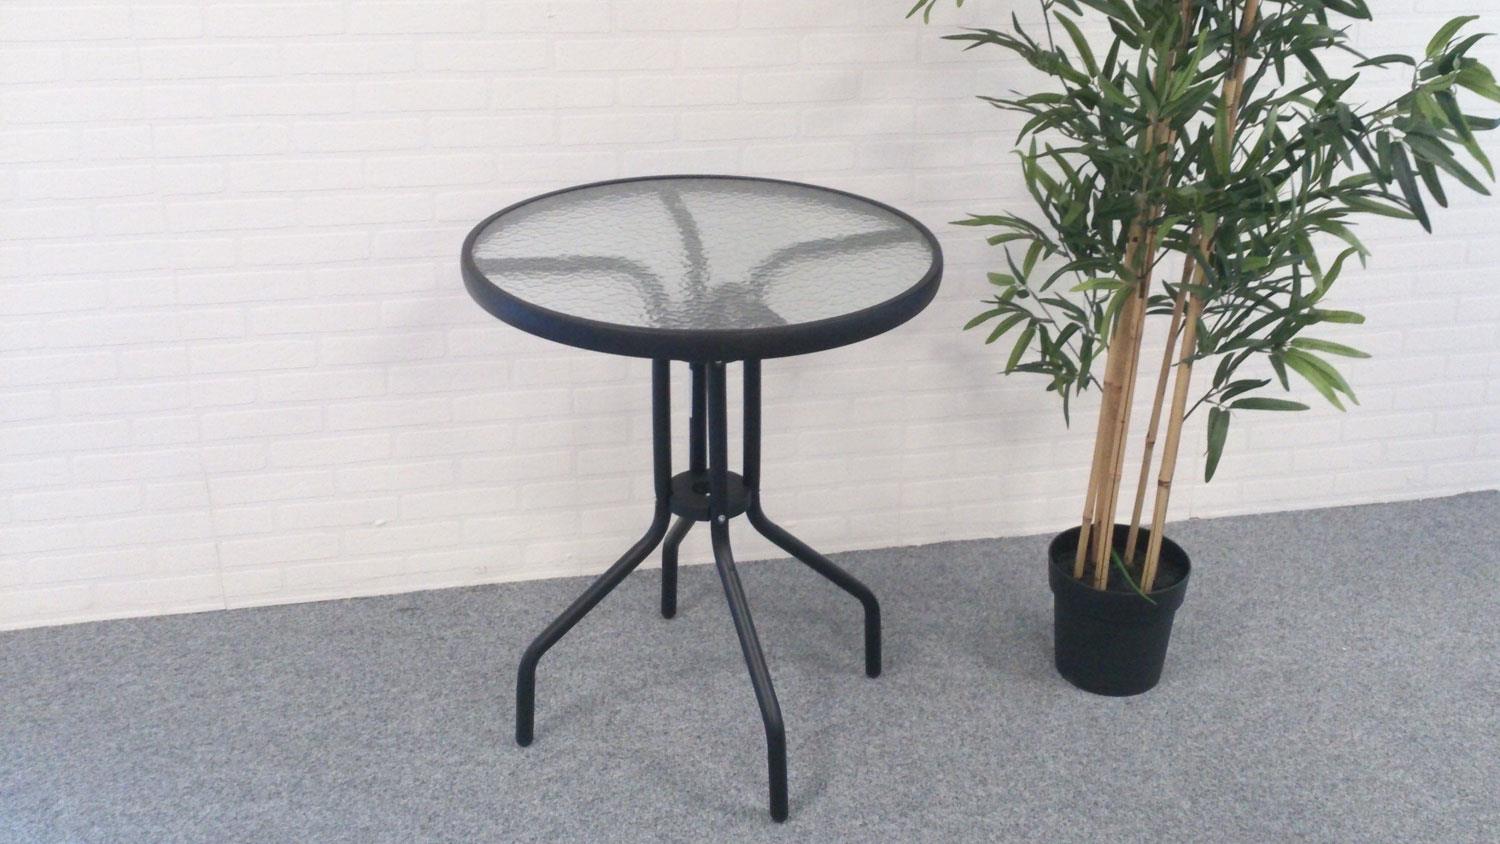 Ø 60 cm Bistrotisch Gartentisch Balkon Tisch rund Metall Glastisch schwarz